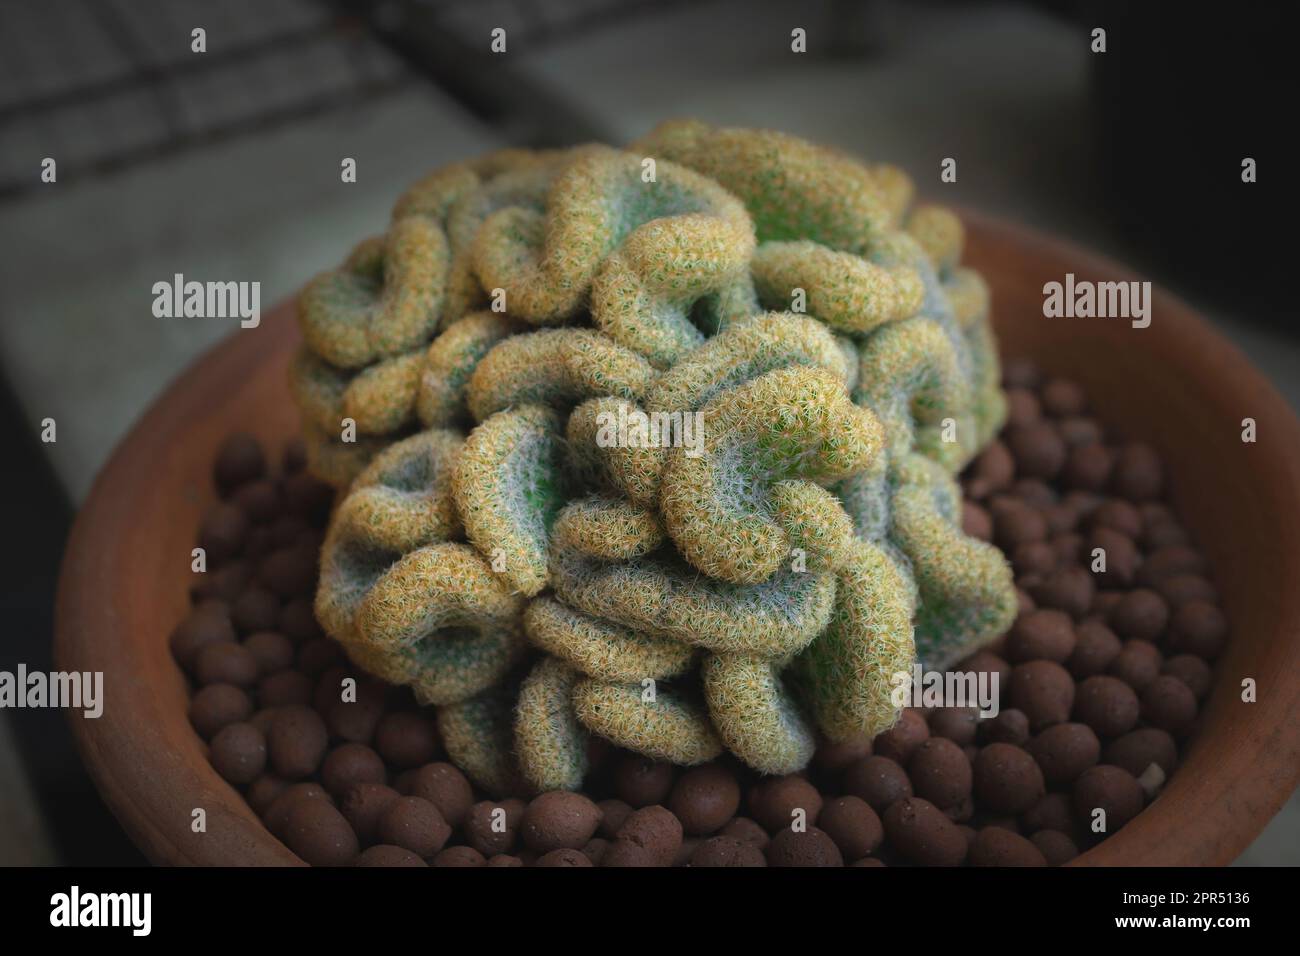 Il Cactus cerebrale (Mammillaria elongata cristata) è un cactus loos come un cervello umano in una pentola. Primo piano. Foto Stock